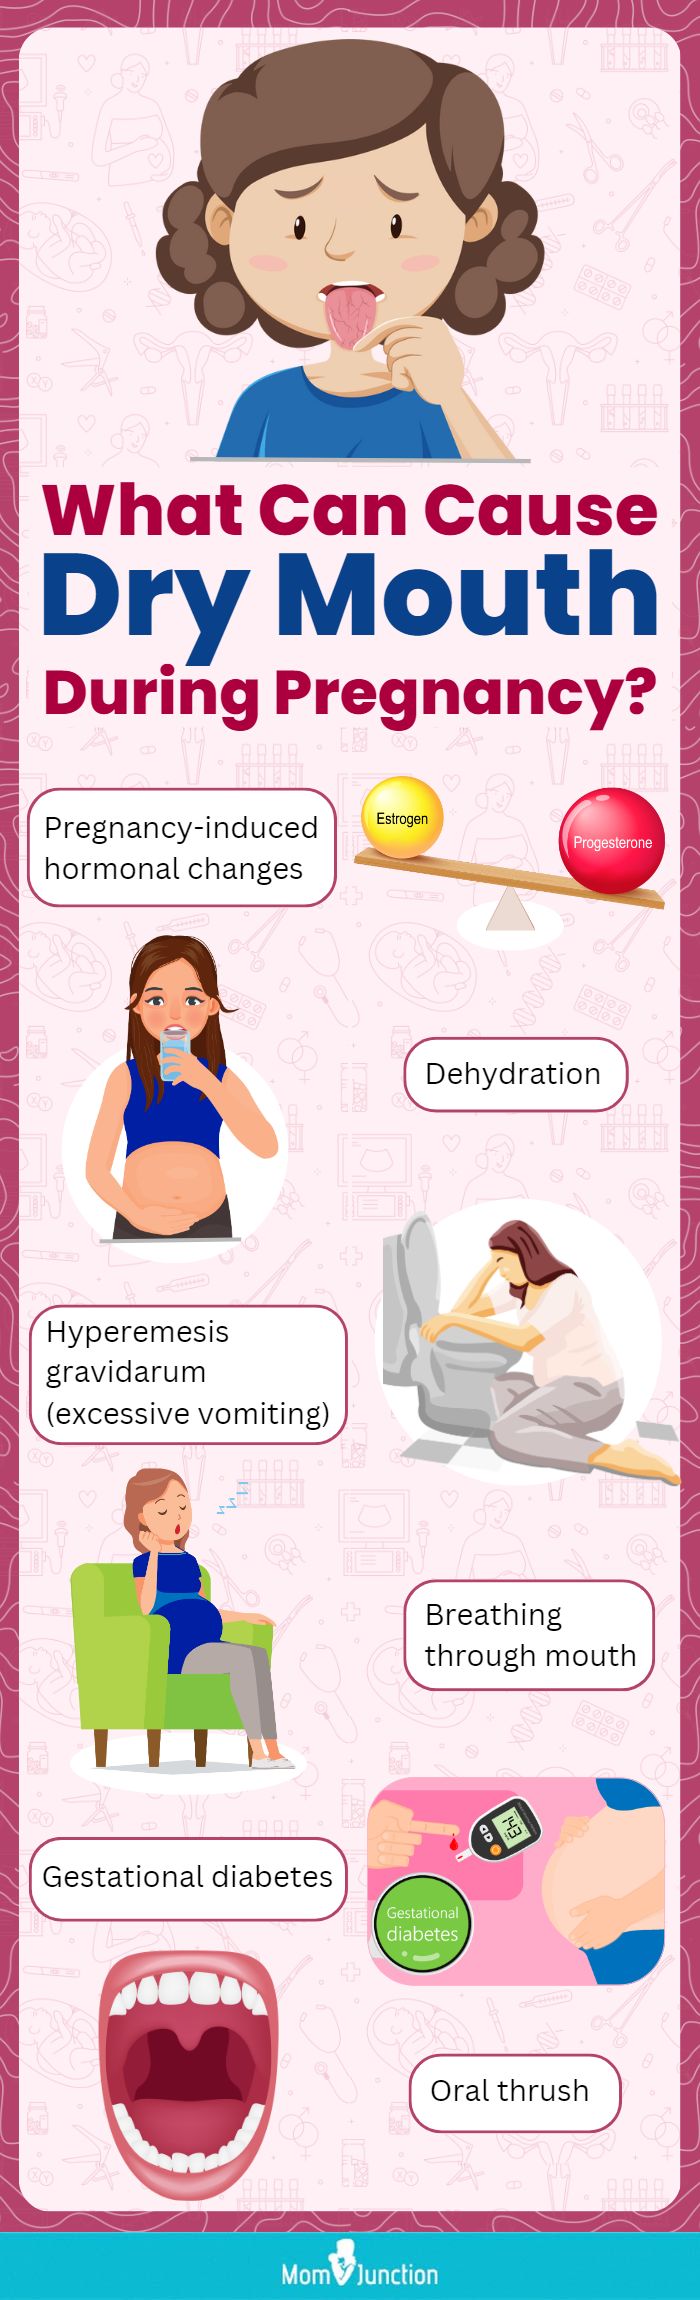 怀孕期间什么会导致口干(信息图)manbet安卓版